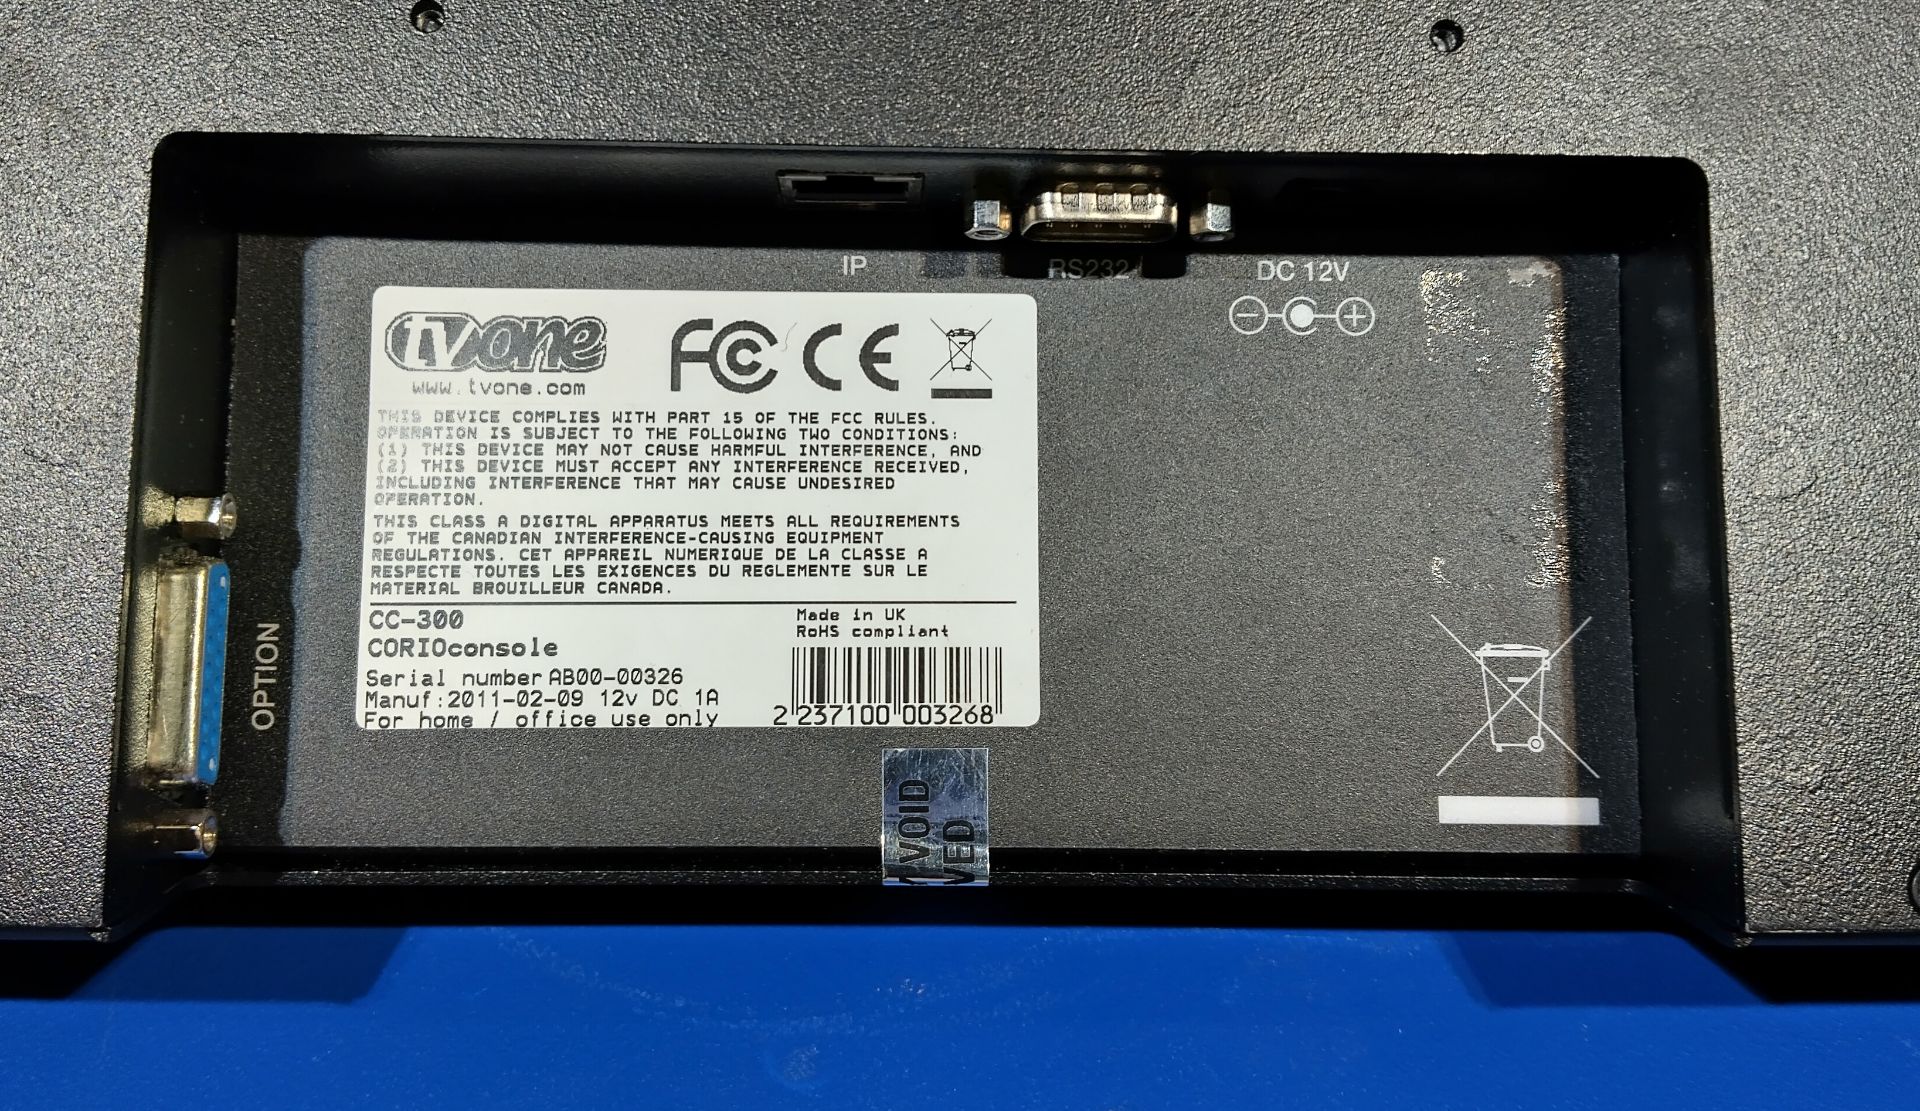 TVone CC-300 Corio vision mixer in case - case dimensions: L 520 x W 370 x H 220mm - Image 5 of 6